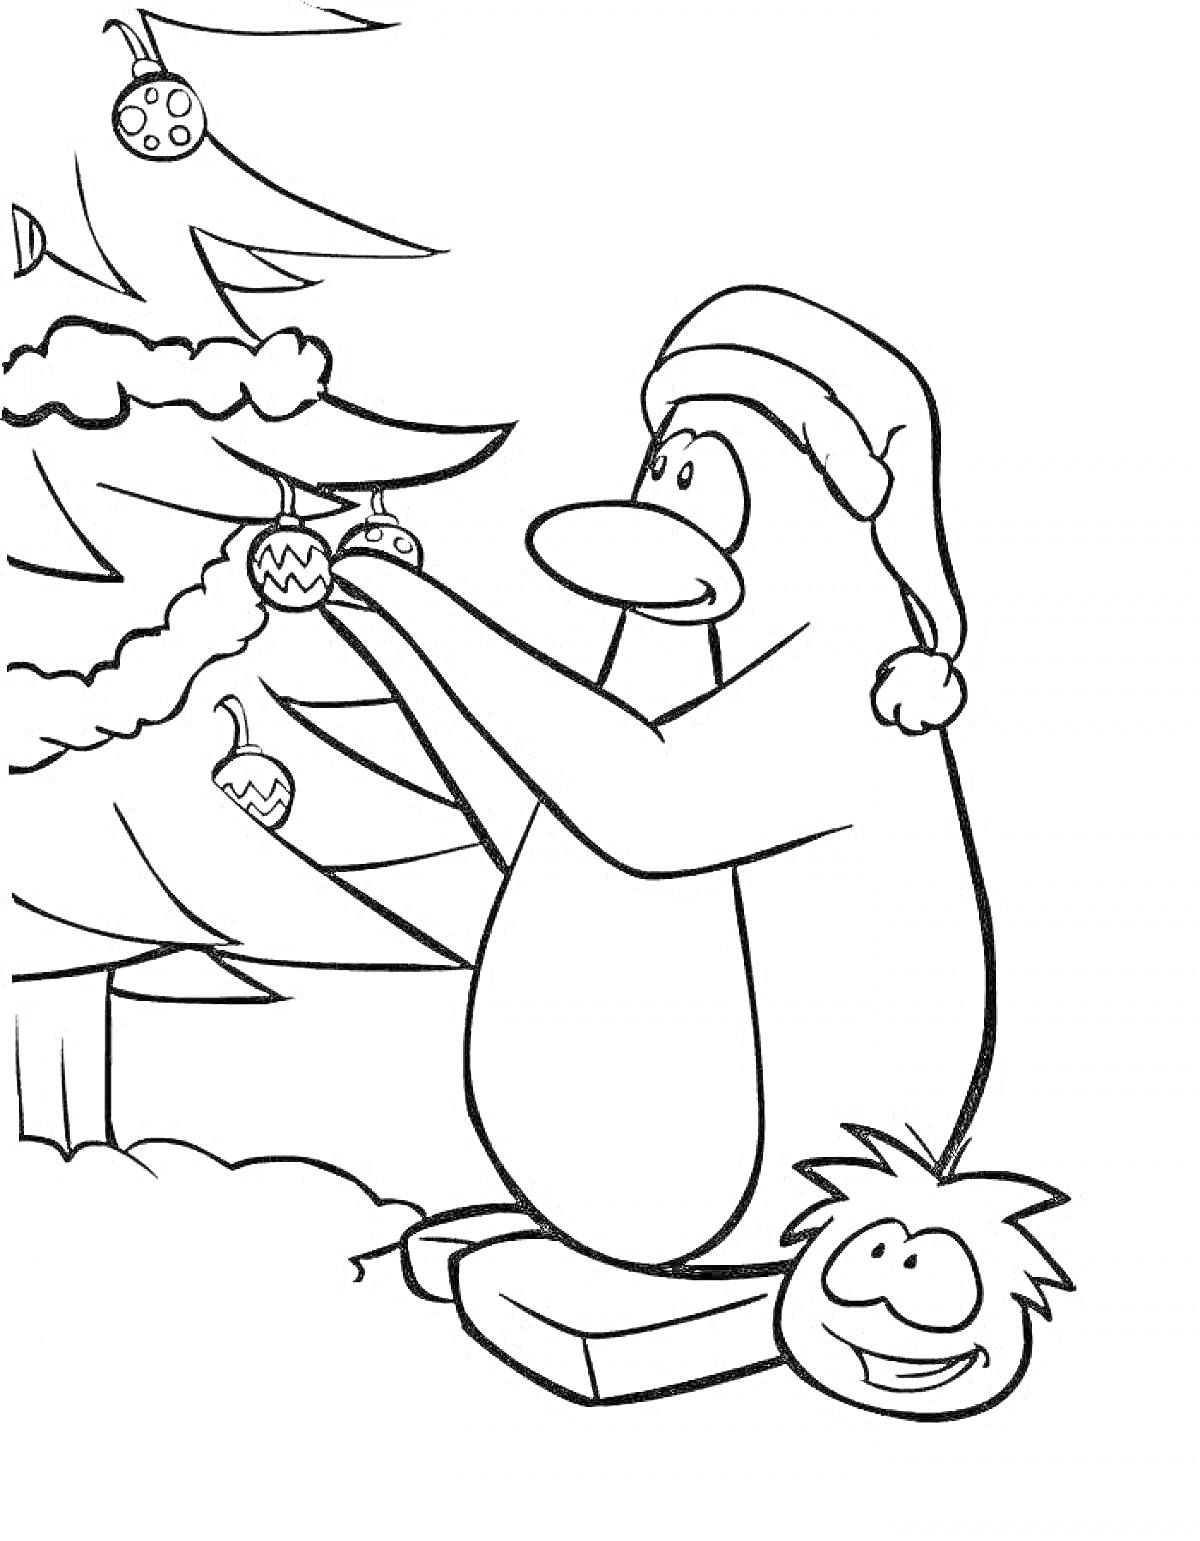 Раскраска Пингвин в шапке Санты украшает ёлку, рядом лежит подарочная коробка и довольный маленький персонаж